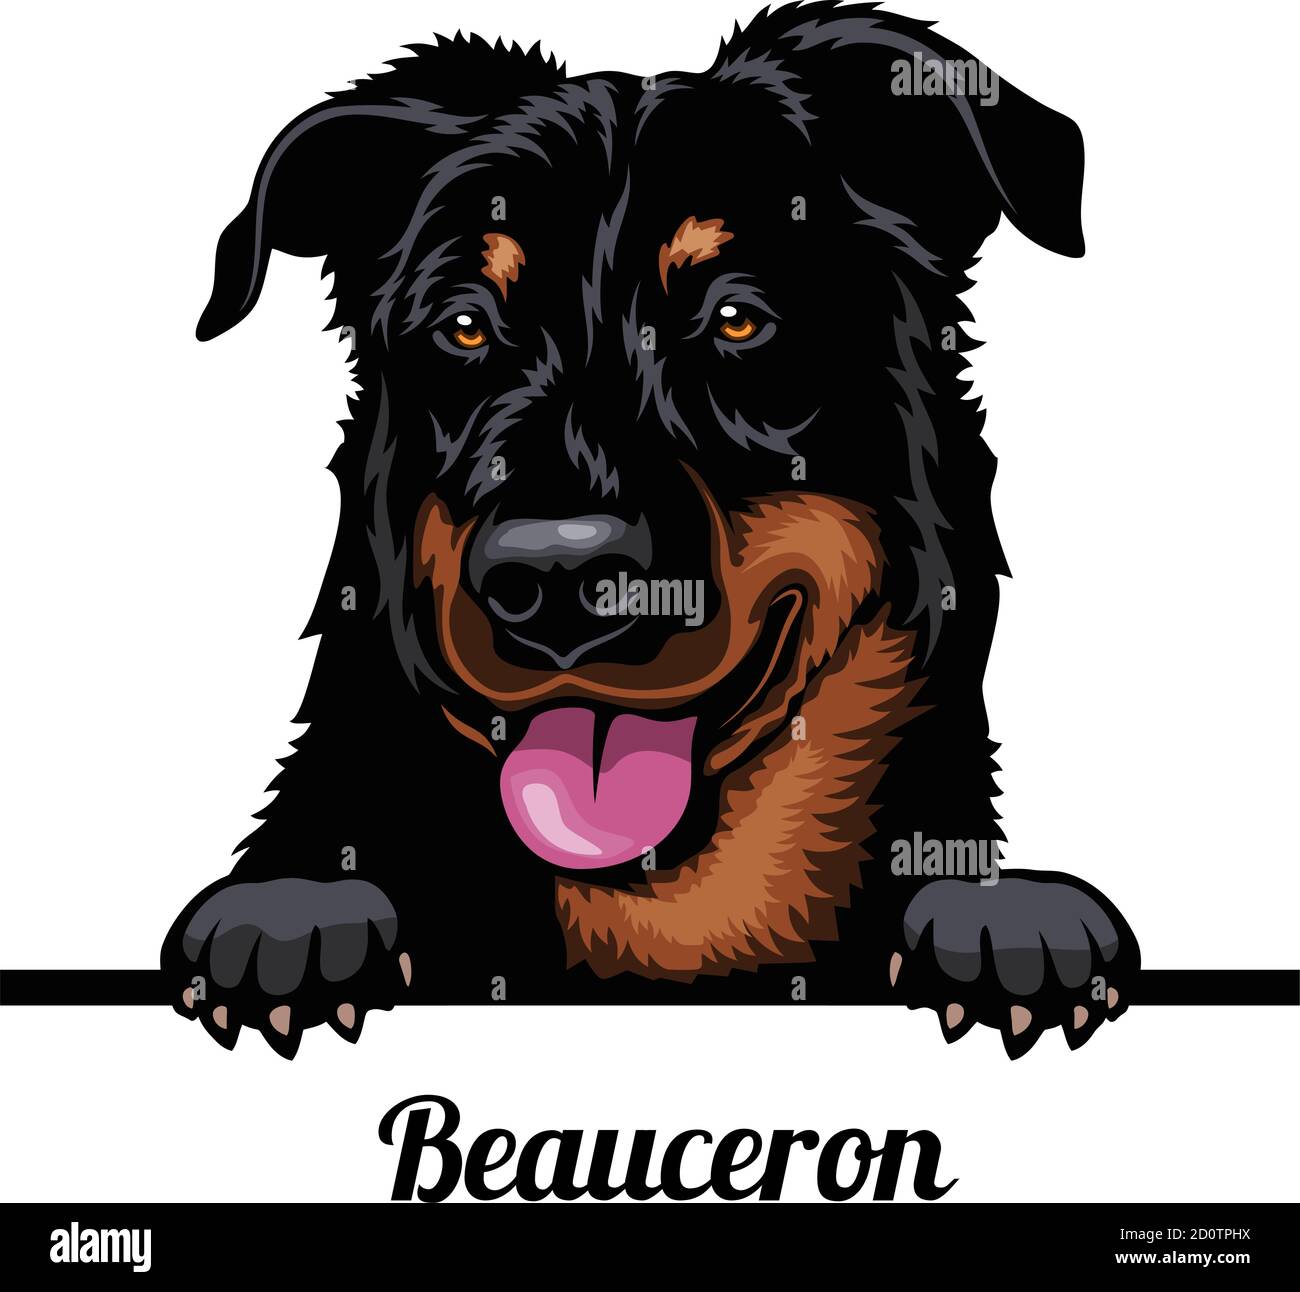 Testa Beauceron - razza cane. Immagine a colori di una testa di cani isolata su uno sfondo bianco Illustrazione Vettoriale